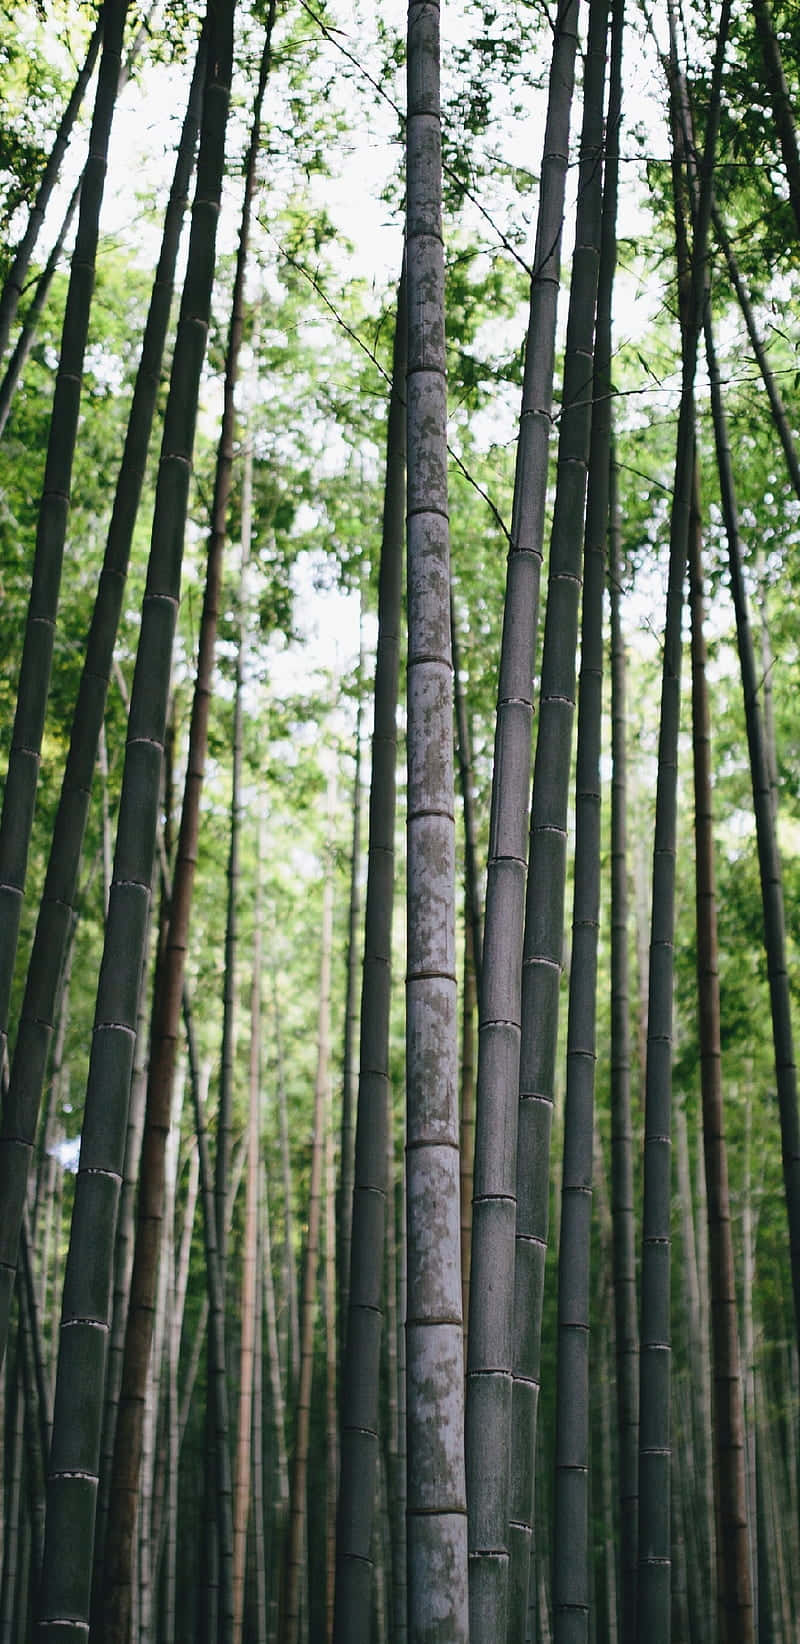 Hohebambusbäume In Einem Wald Wallpaper